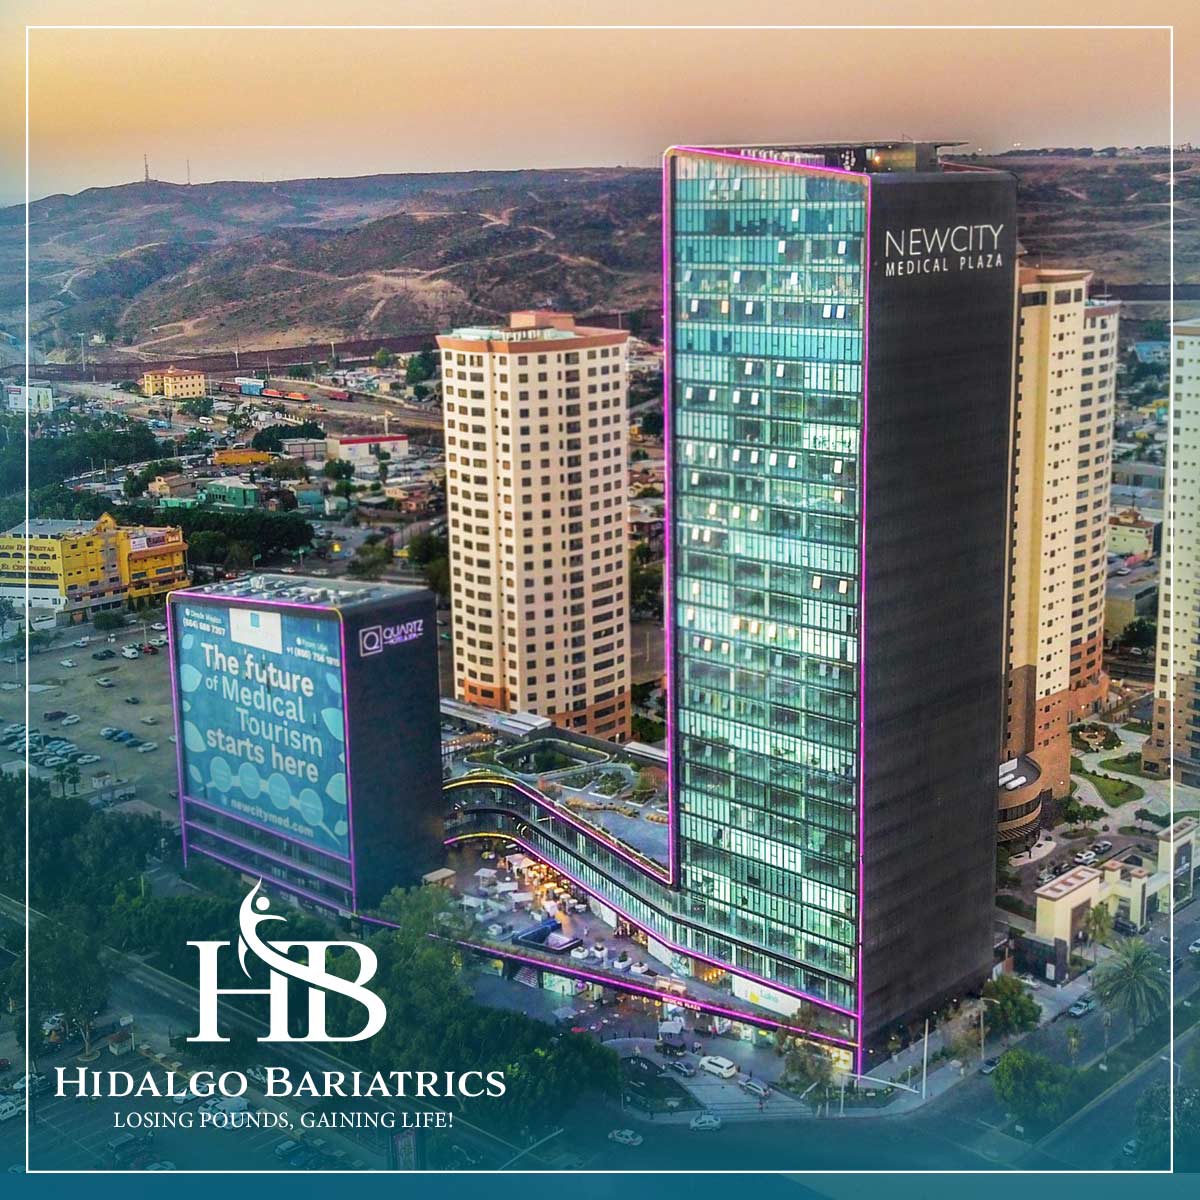 Dr-Hidalgo-Facilities-2